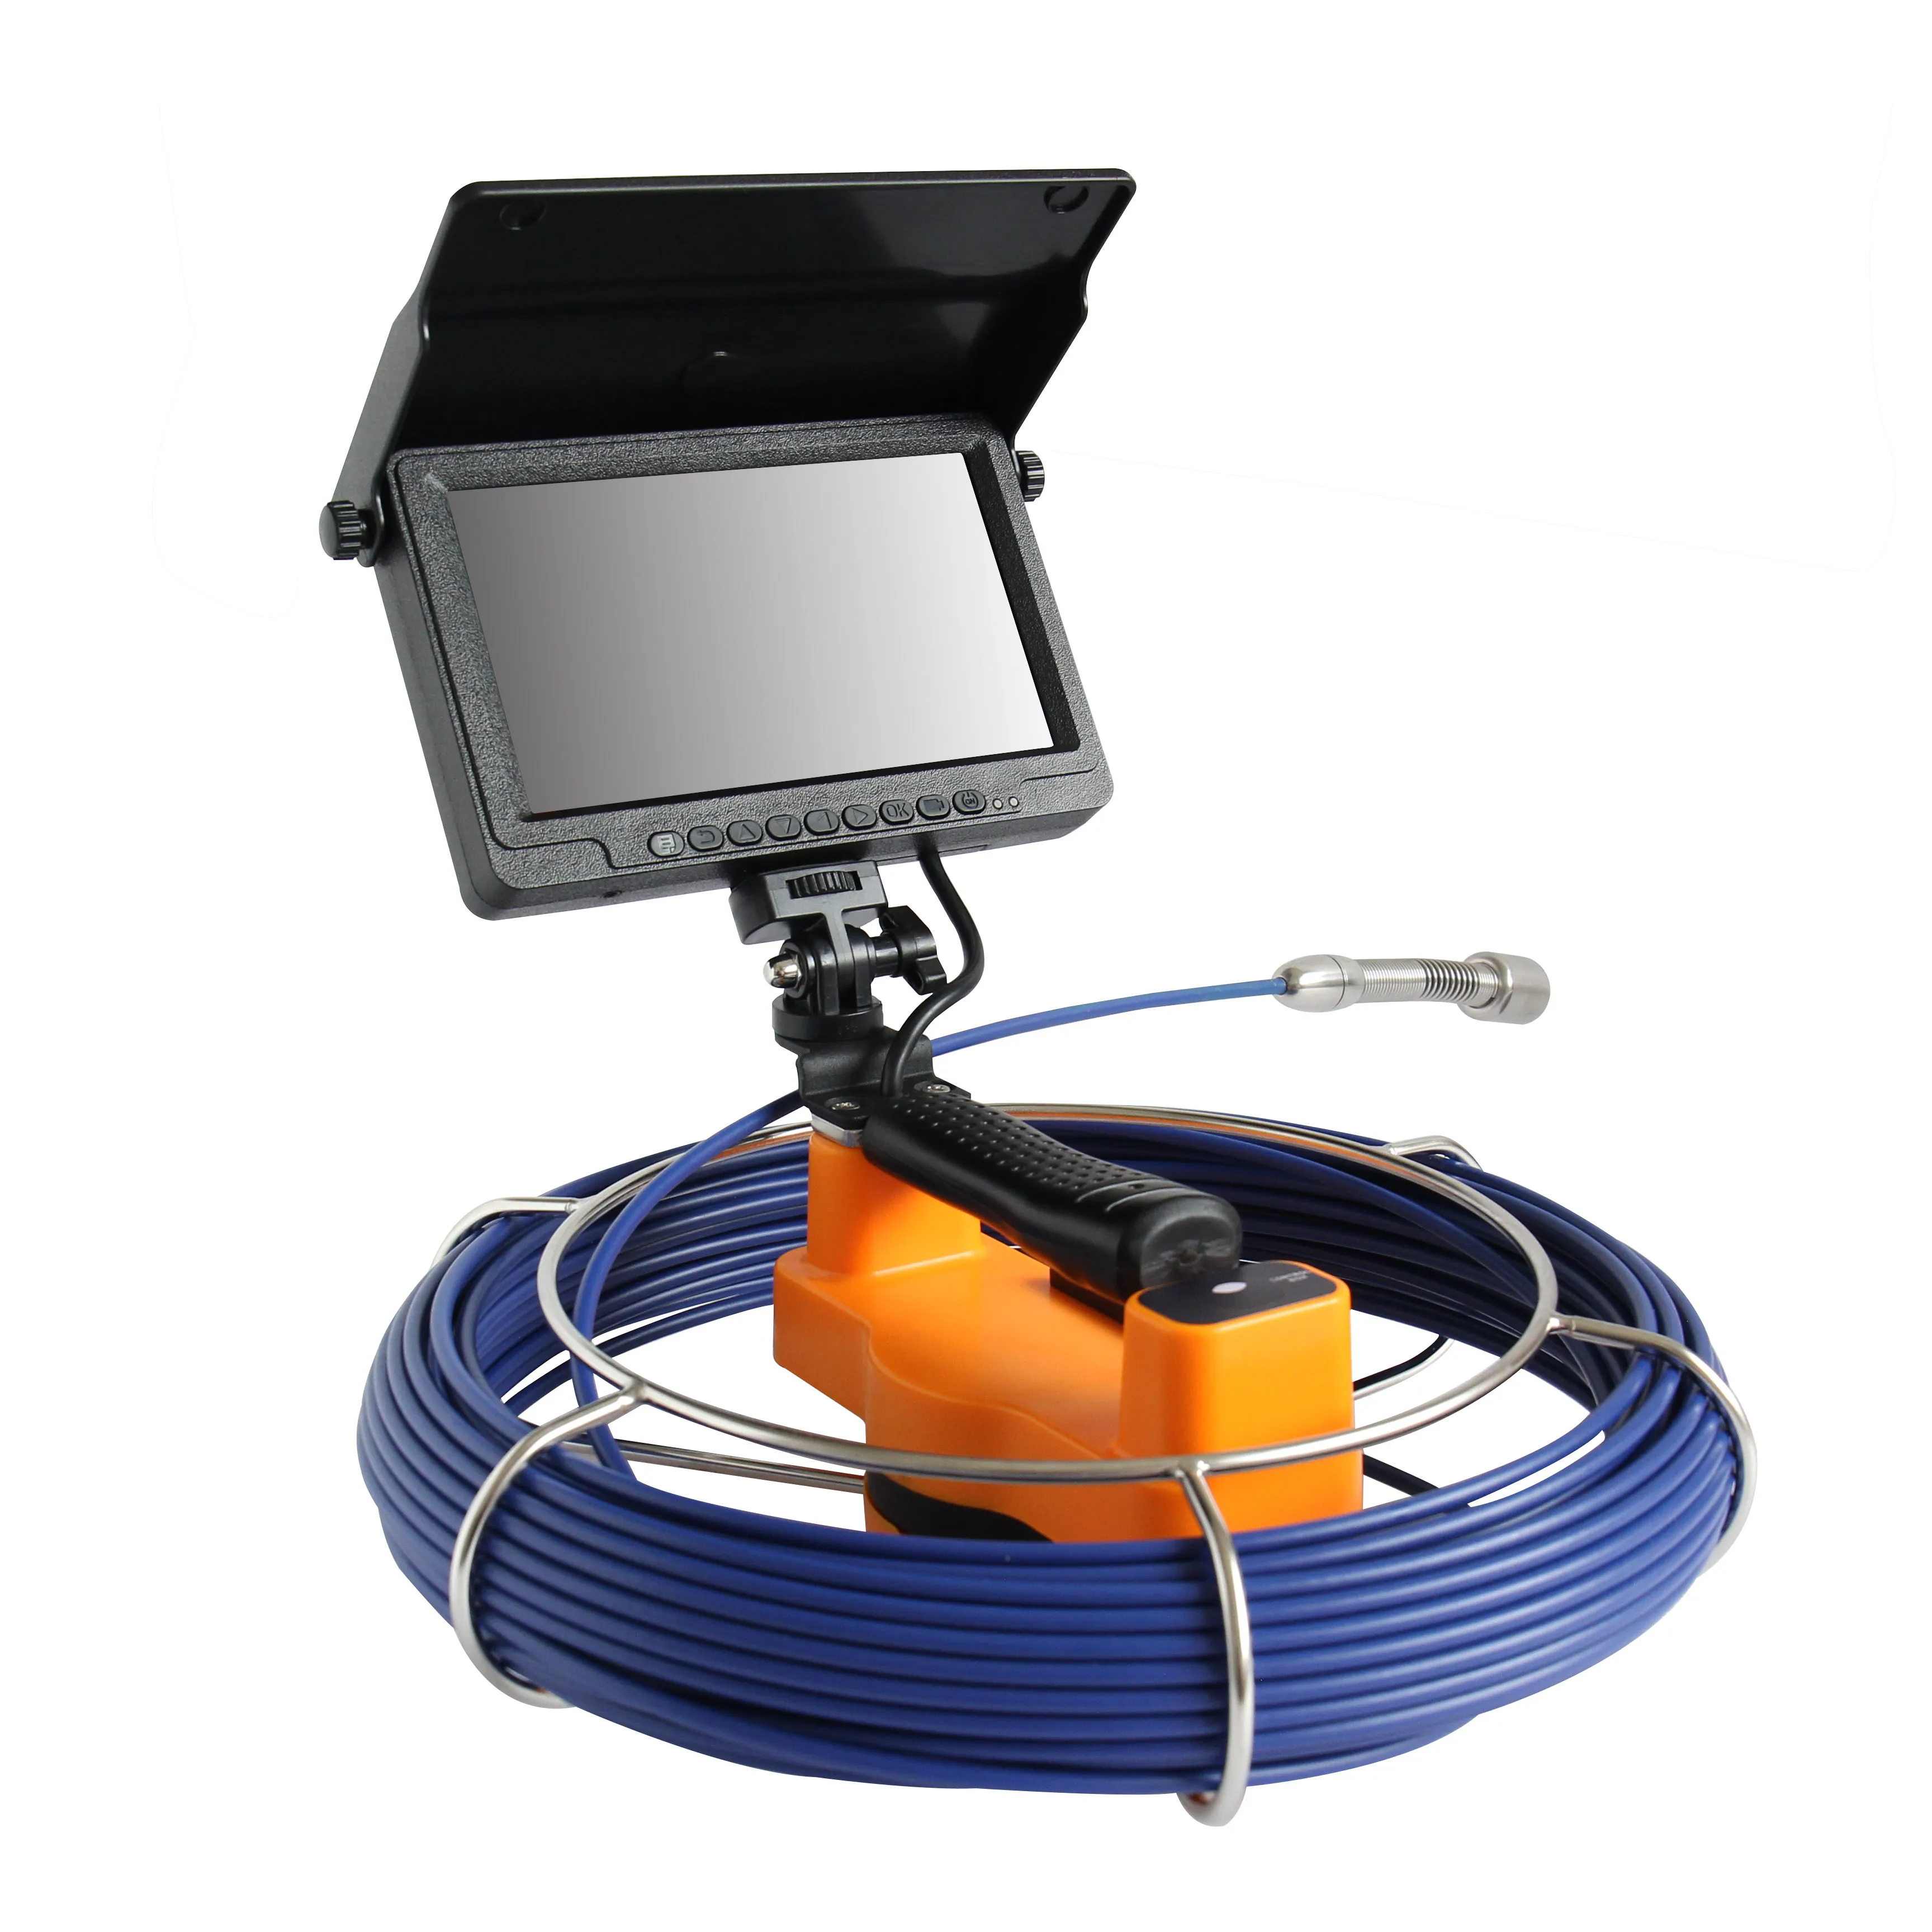 WOPSON 23มิลลิเมตรกล้องหัว7นิ้ว TFT Monitor ท่อตรวจสอบท่อระบายน้ำกล้องวงจรปิดที่ใช้สำหรับท่อท่อระบายน้ำการตรวจสอบ